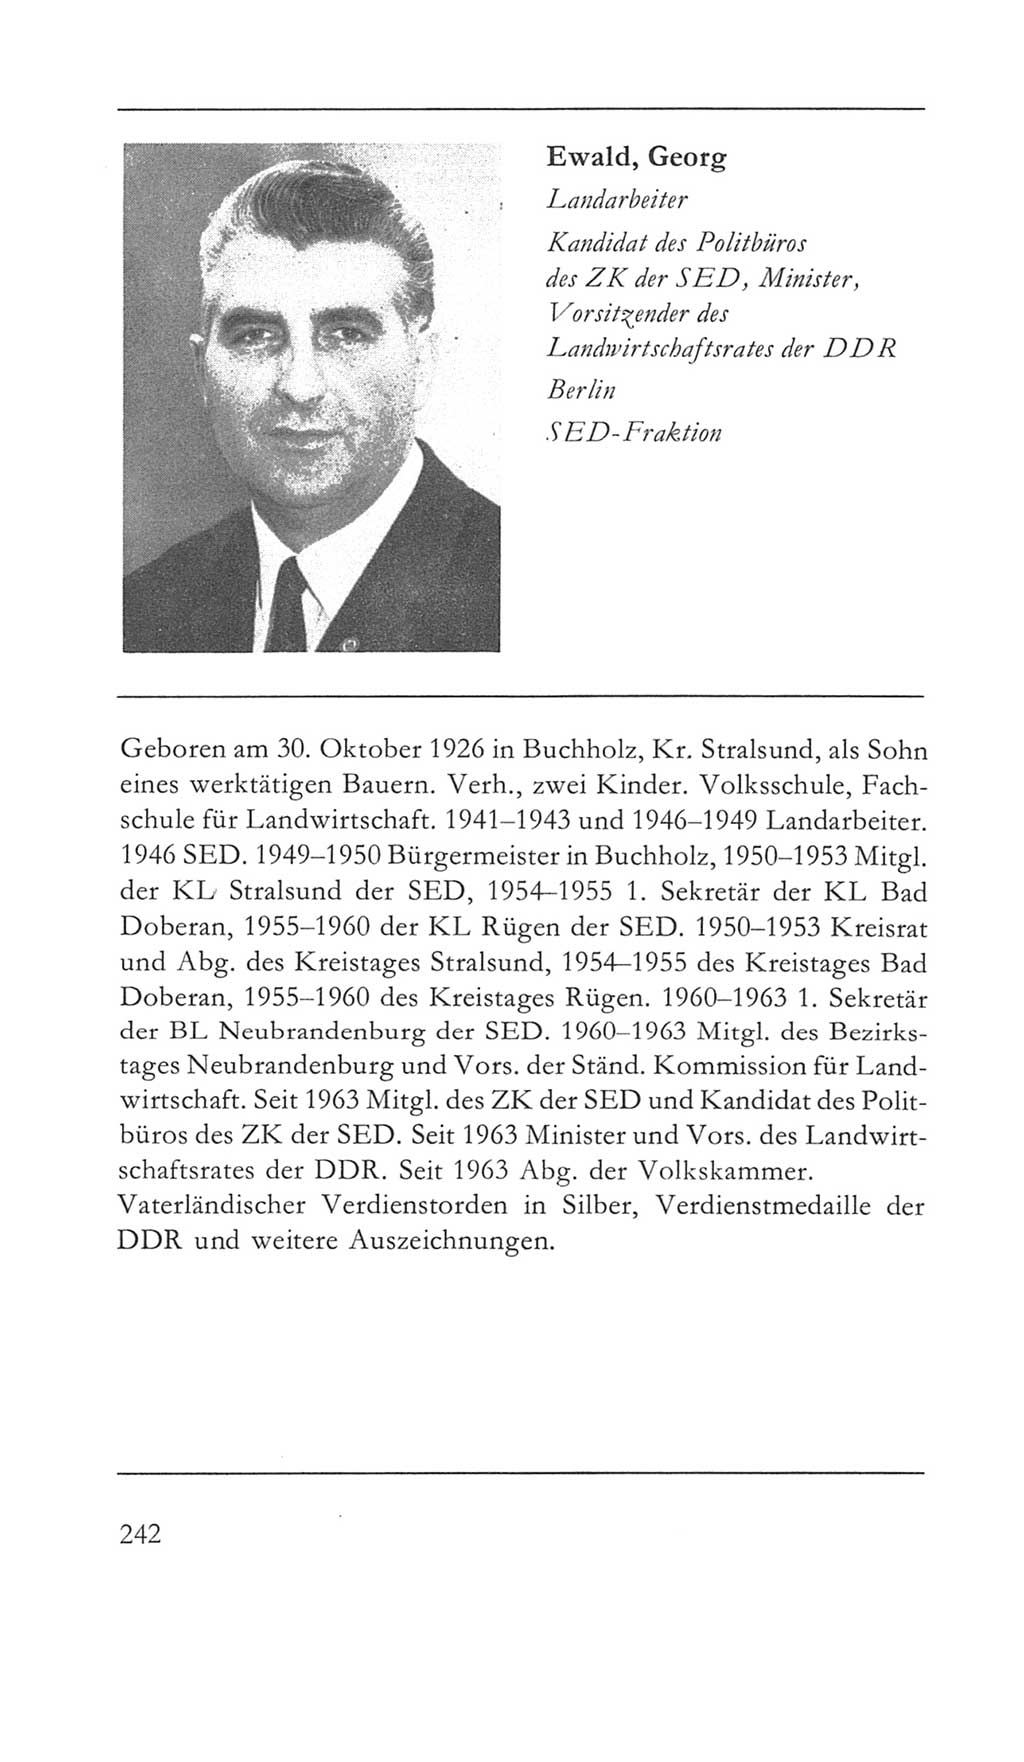 Volkskammer (VK) der Deutschen Demokratischen Republik (DDR) 5. Wahlperiode 1967-1971, Seite 242 (VK. DDR 5. WP. 1967-1971, S. 242)